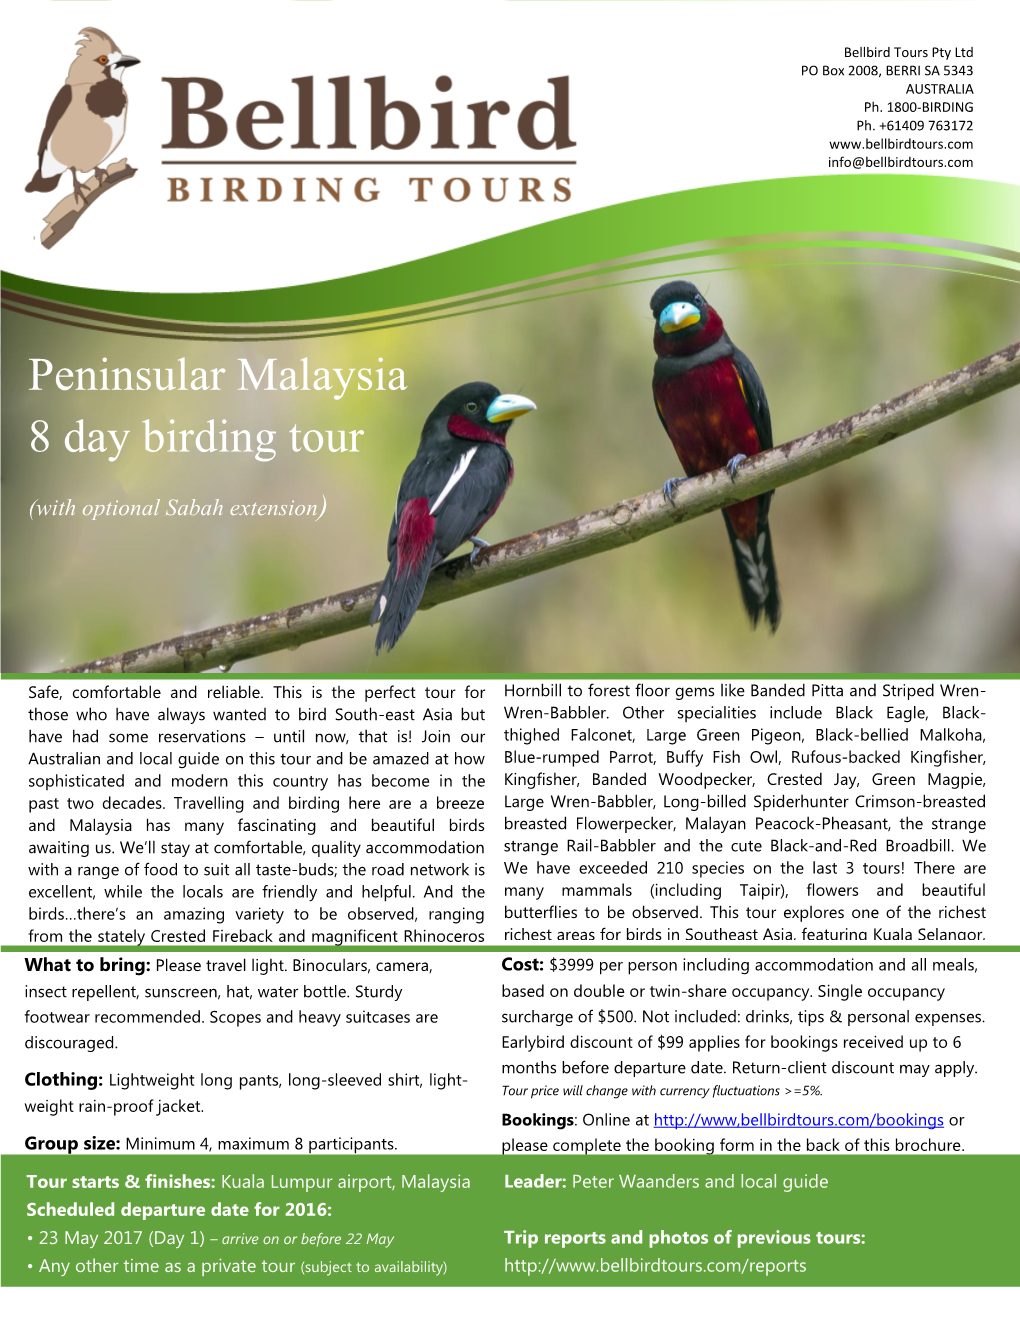 Peninsular Malaysia 8 Day Birding Tour